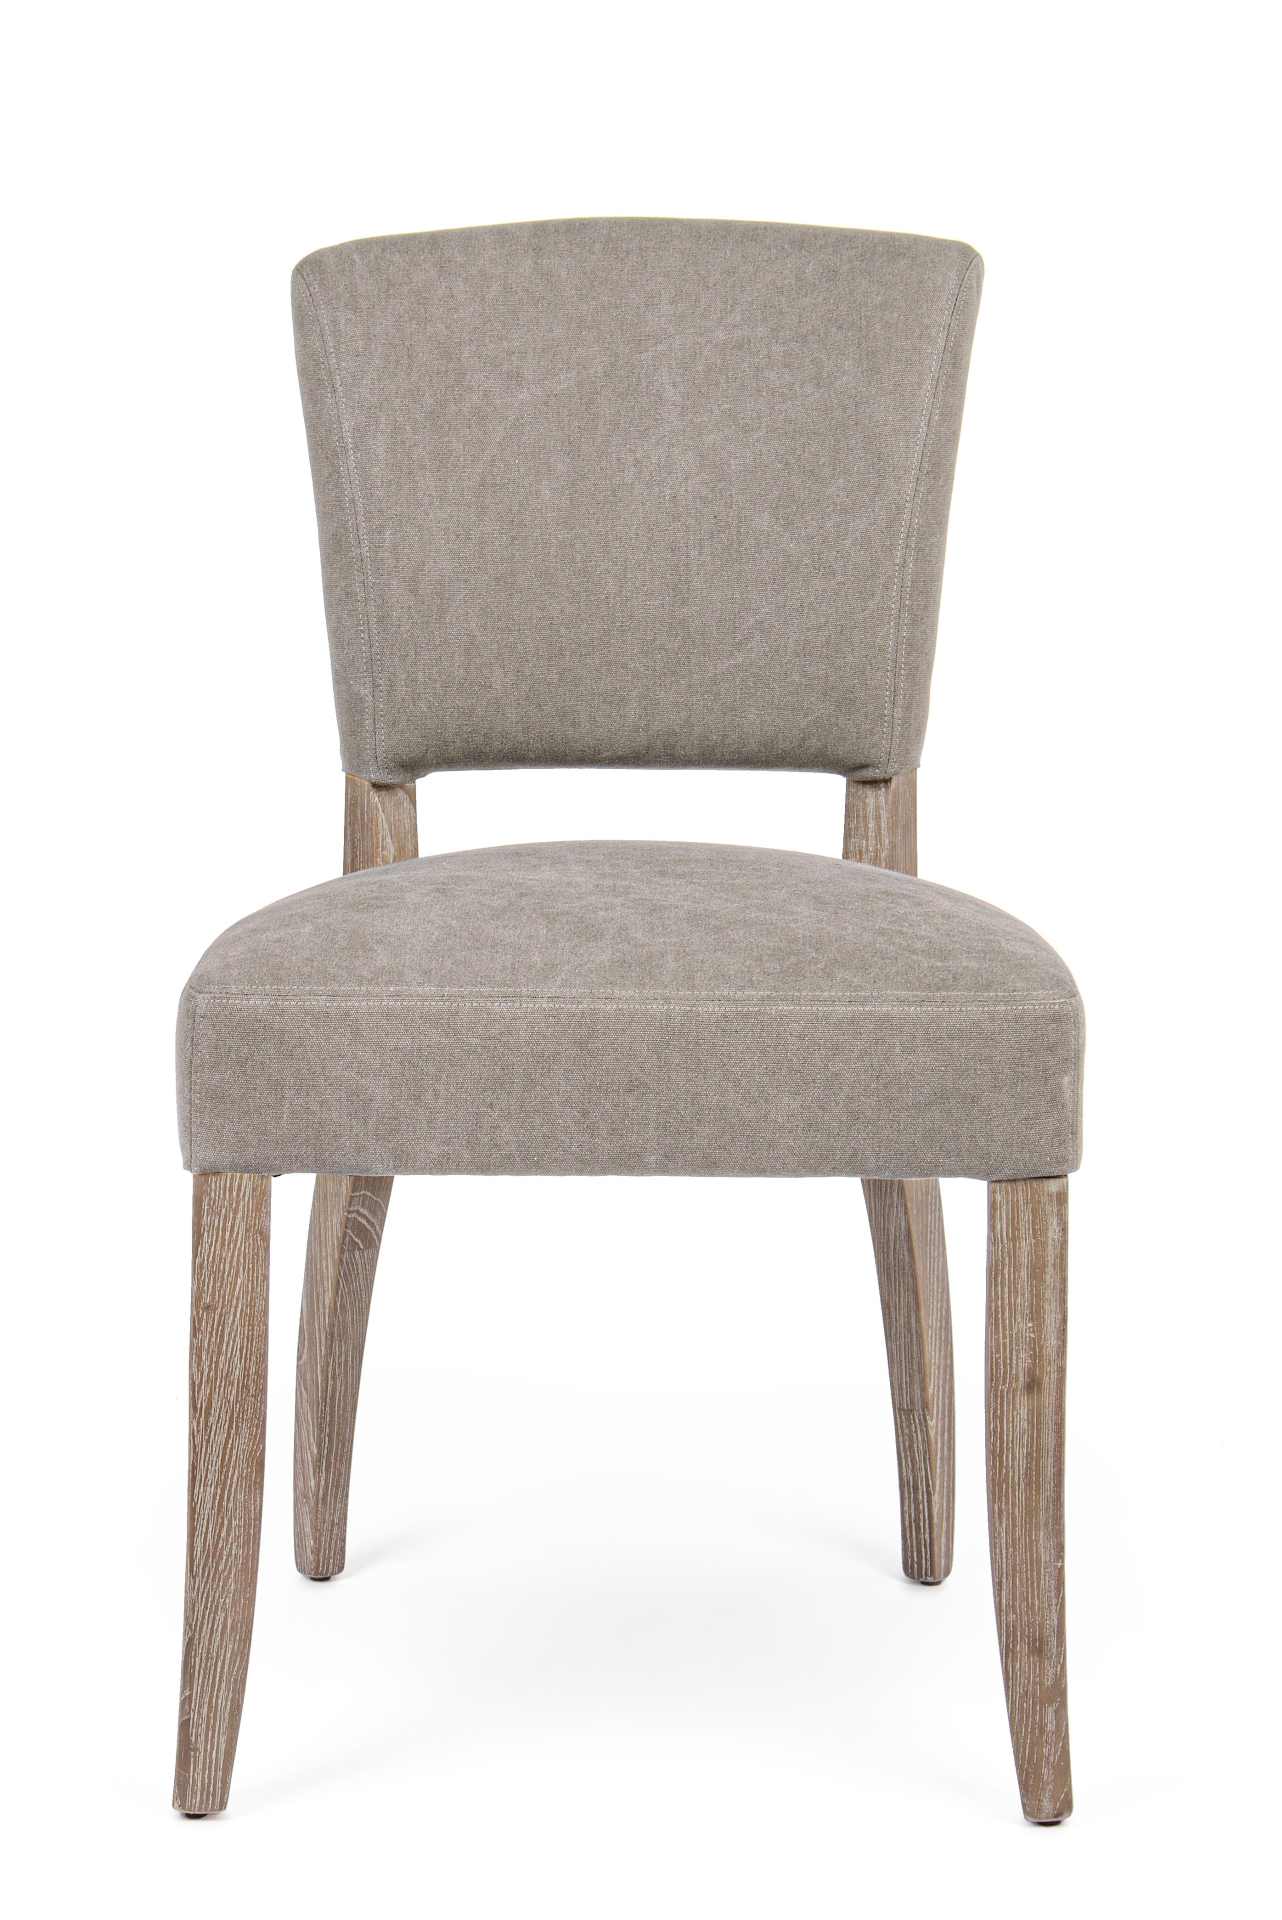 Der Esszimmerstuhl Maratriz überzeugt mit seinem klassischem Design. Gefertigt wurde der Stuhl aus Eschenholz, welches einen natürlichen Farbton besitzt. Die Sitz- und Rückenfläche besteht aus einem Mix aus Polyester und Baumwolle, welche einen grauen Far